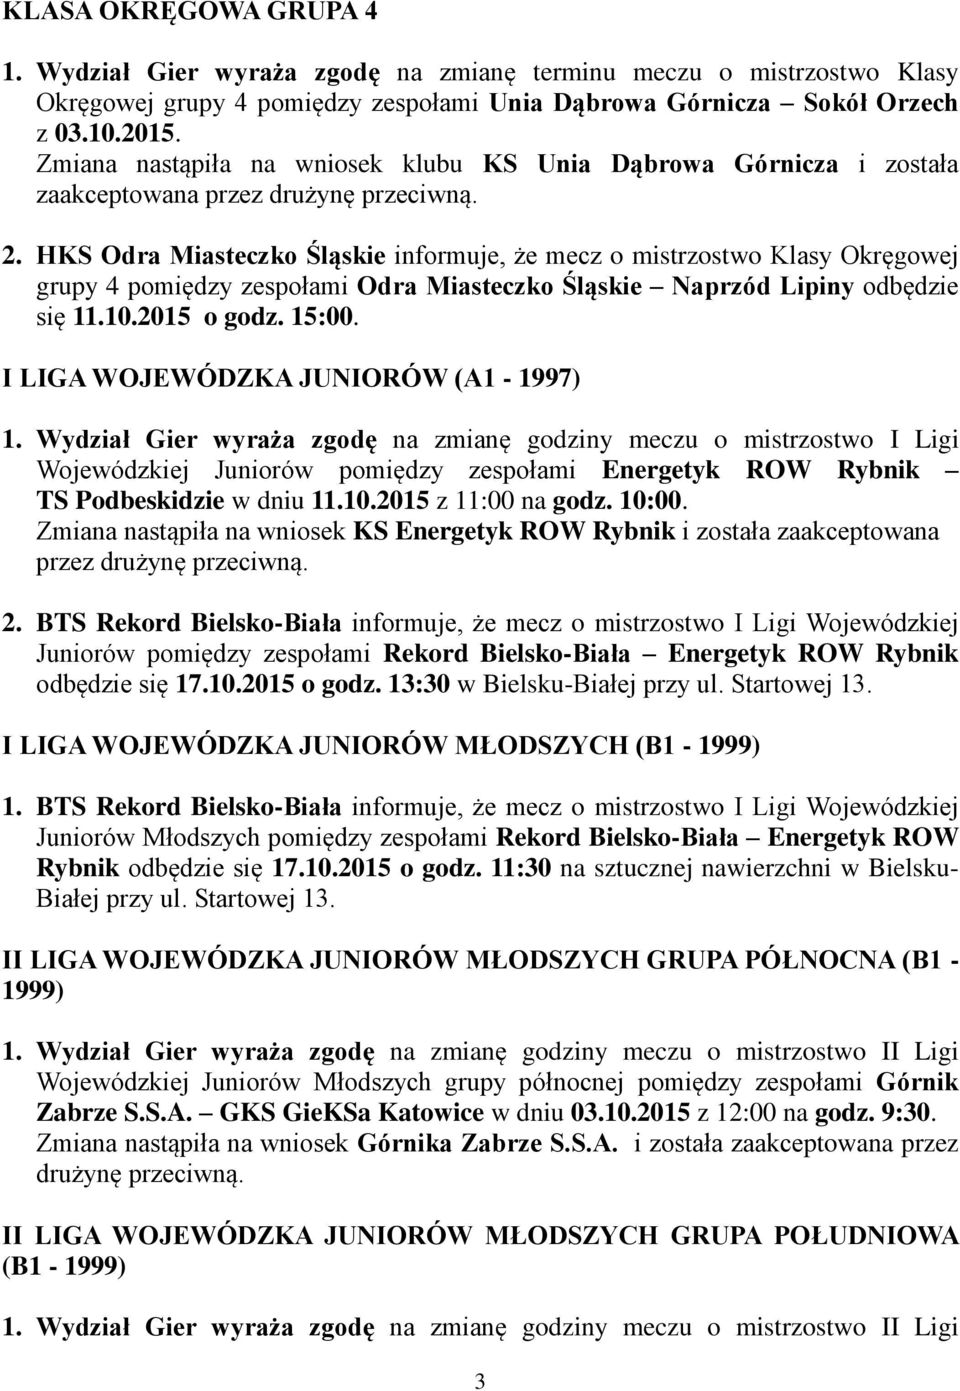 HKS Odra Miasteczko Śląskie informuje, że mecz o mistrzostwo Klasy Okręgowej grupy 4 pomiędzy zespołami Odra Miasteczko Śląskie Naprzód Lipiny odbędzie się 11.10.2015 o godz. 15:00.